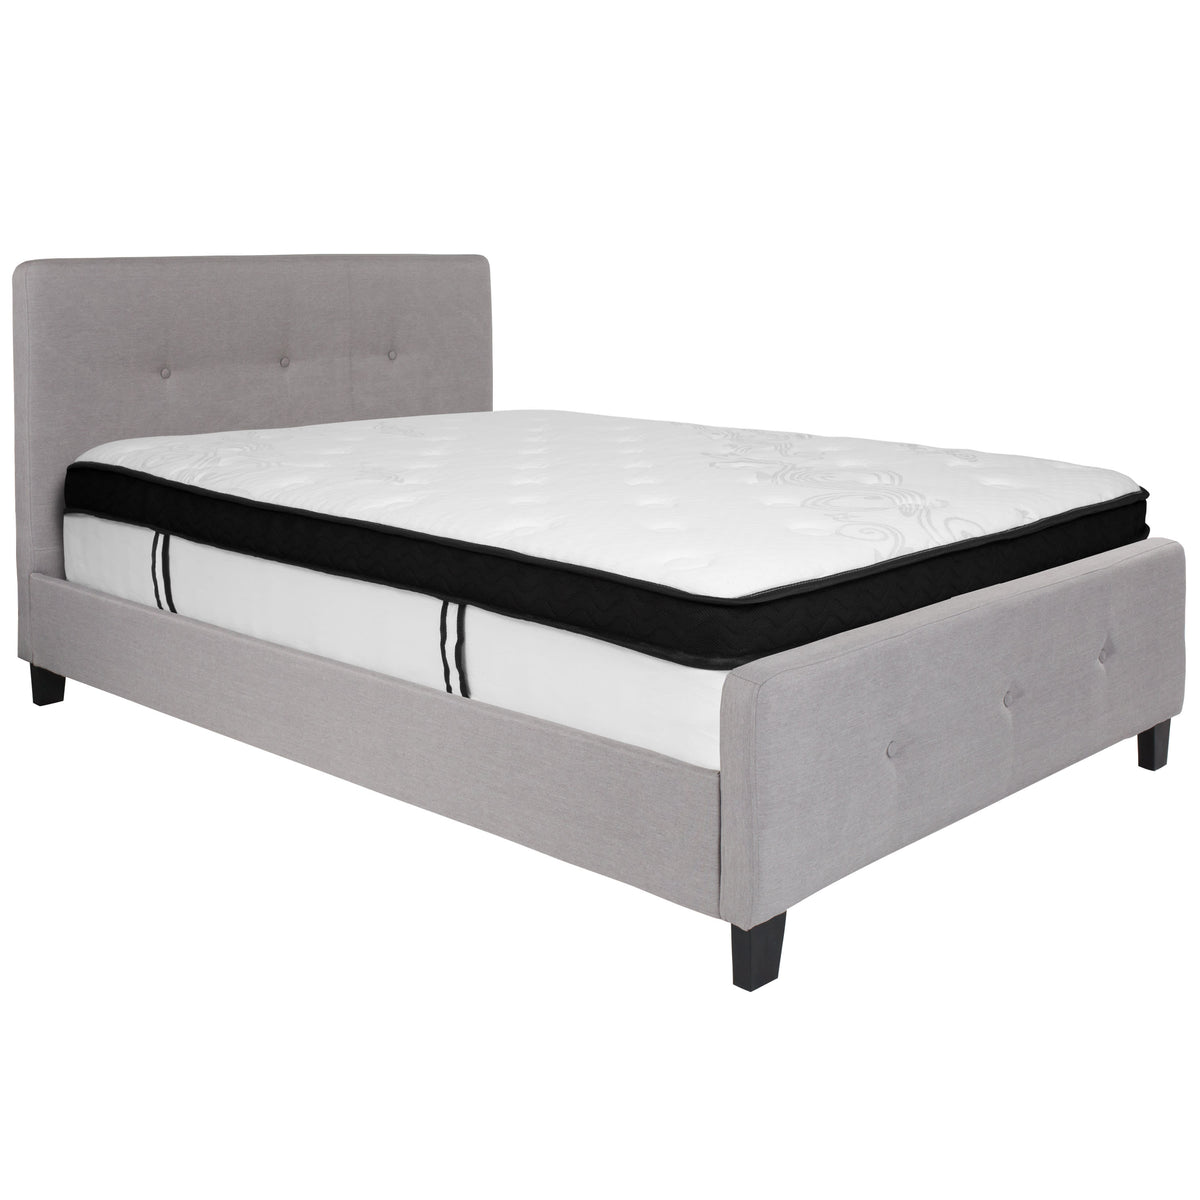 Light Gray,Full |#| Full Three Button Tufted Platform Bed/Memory Foam Mattress-Light Gray Fabric